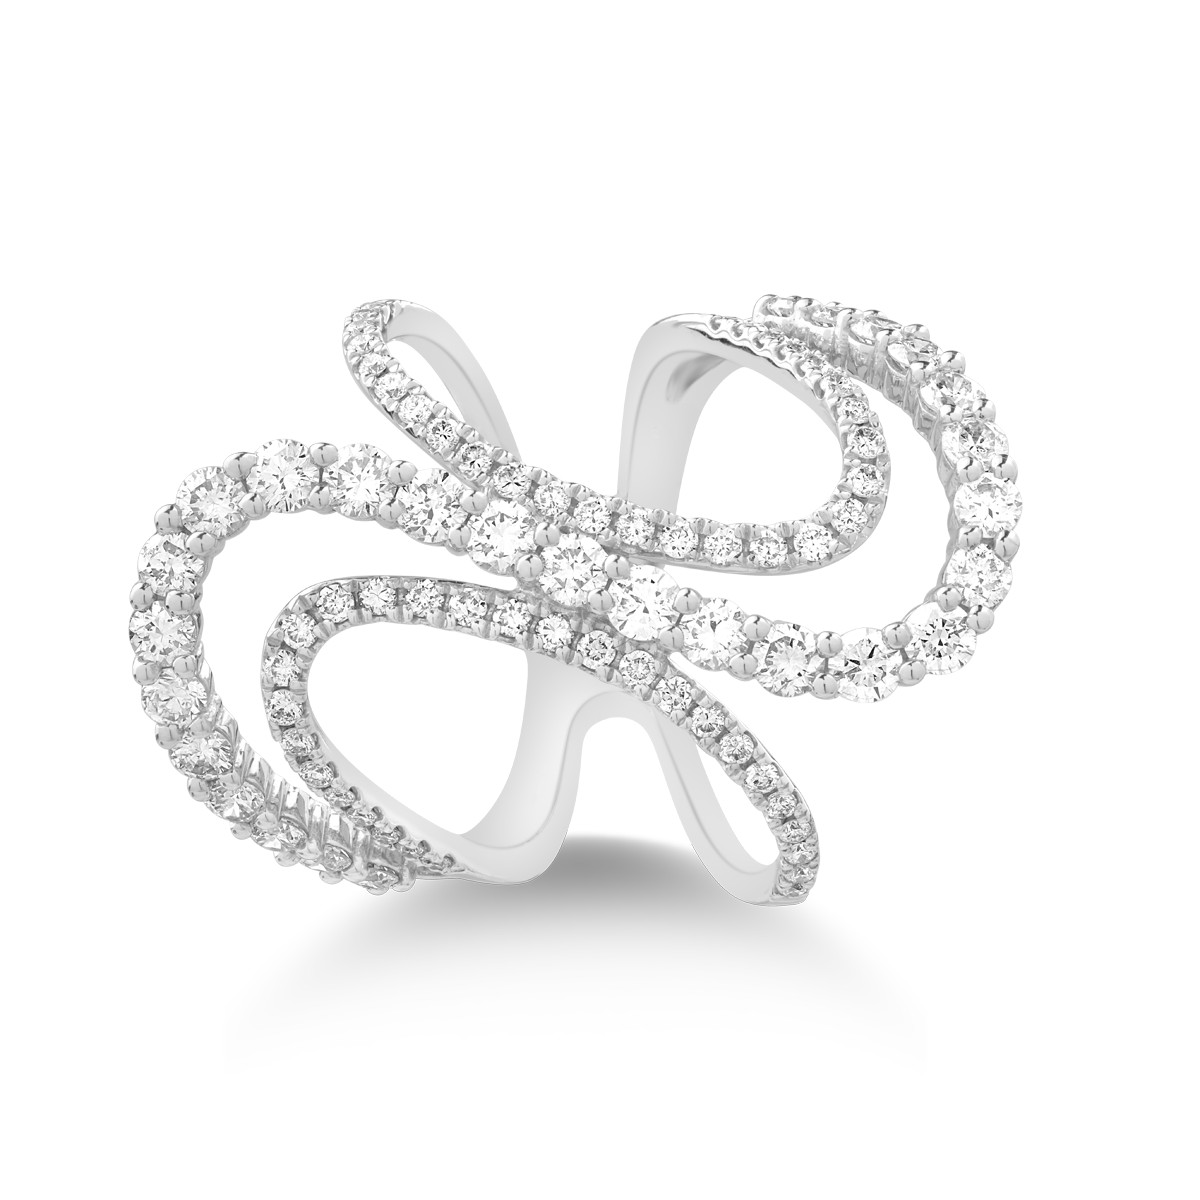 18K fehérarany gyűrű 1,65 karátos gyémántokkal